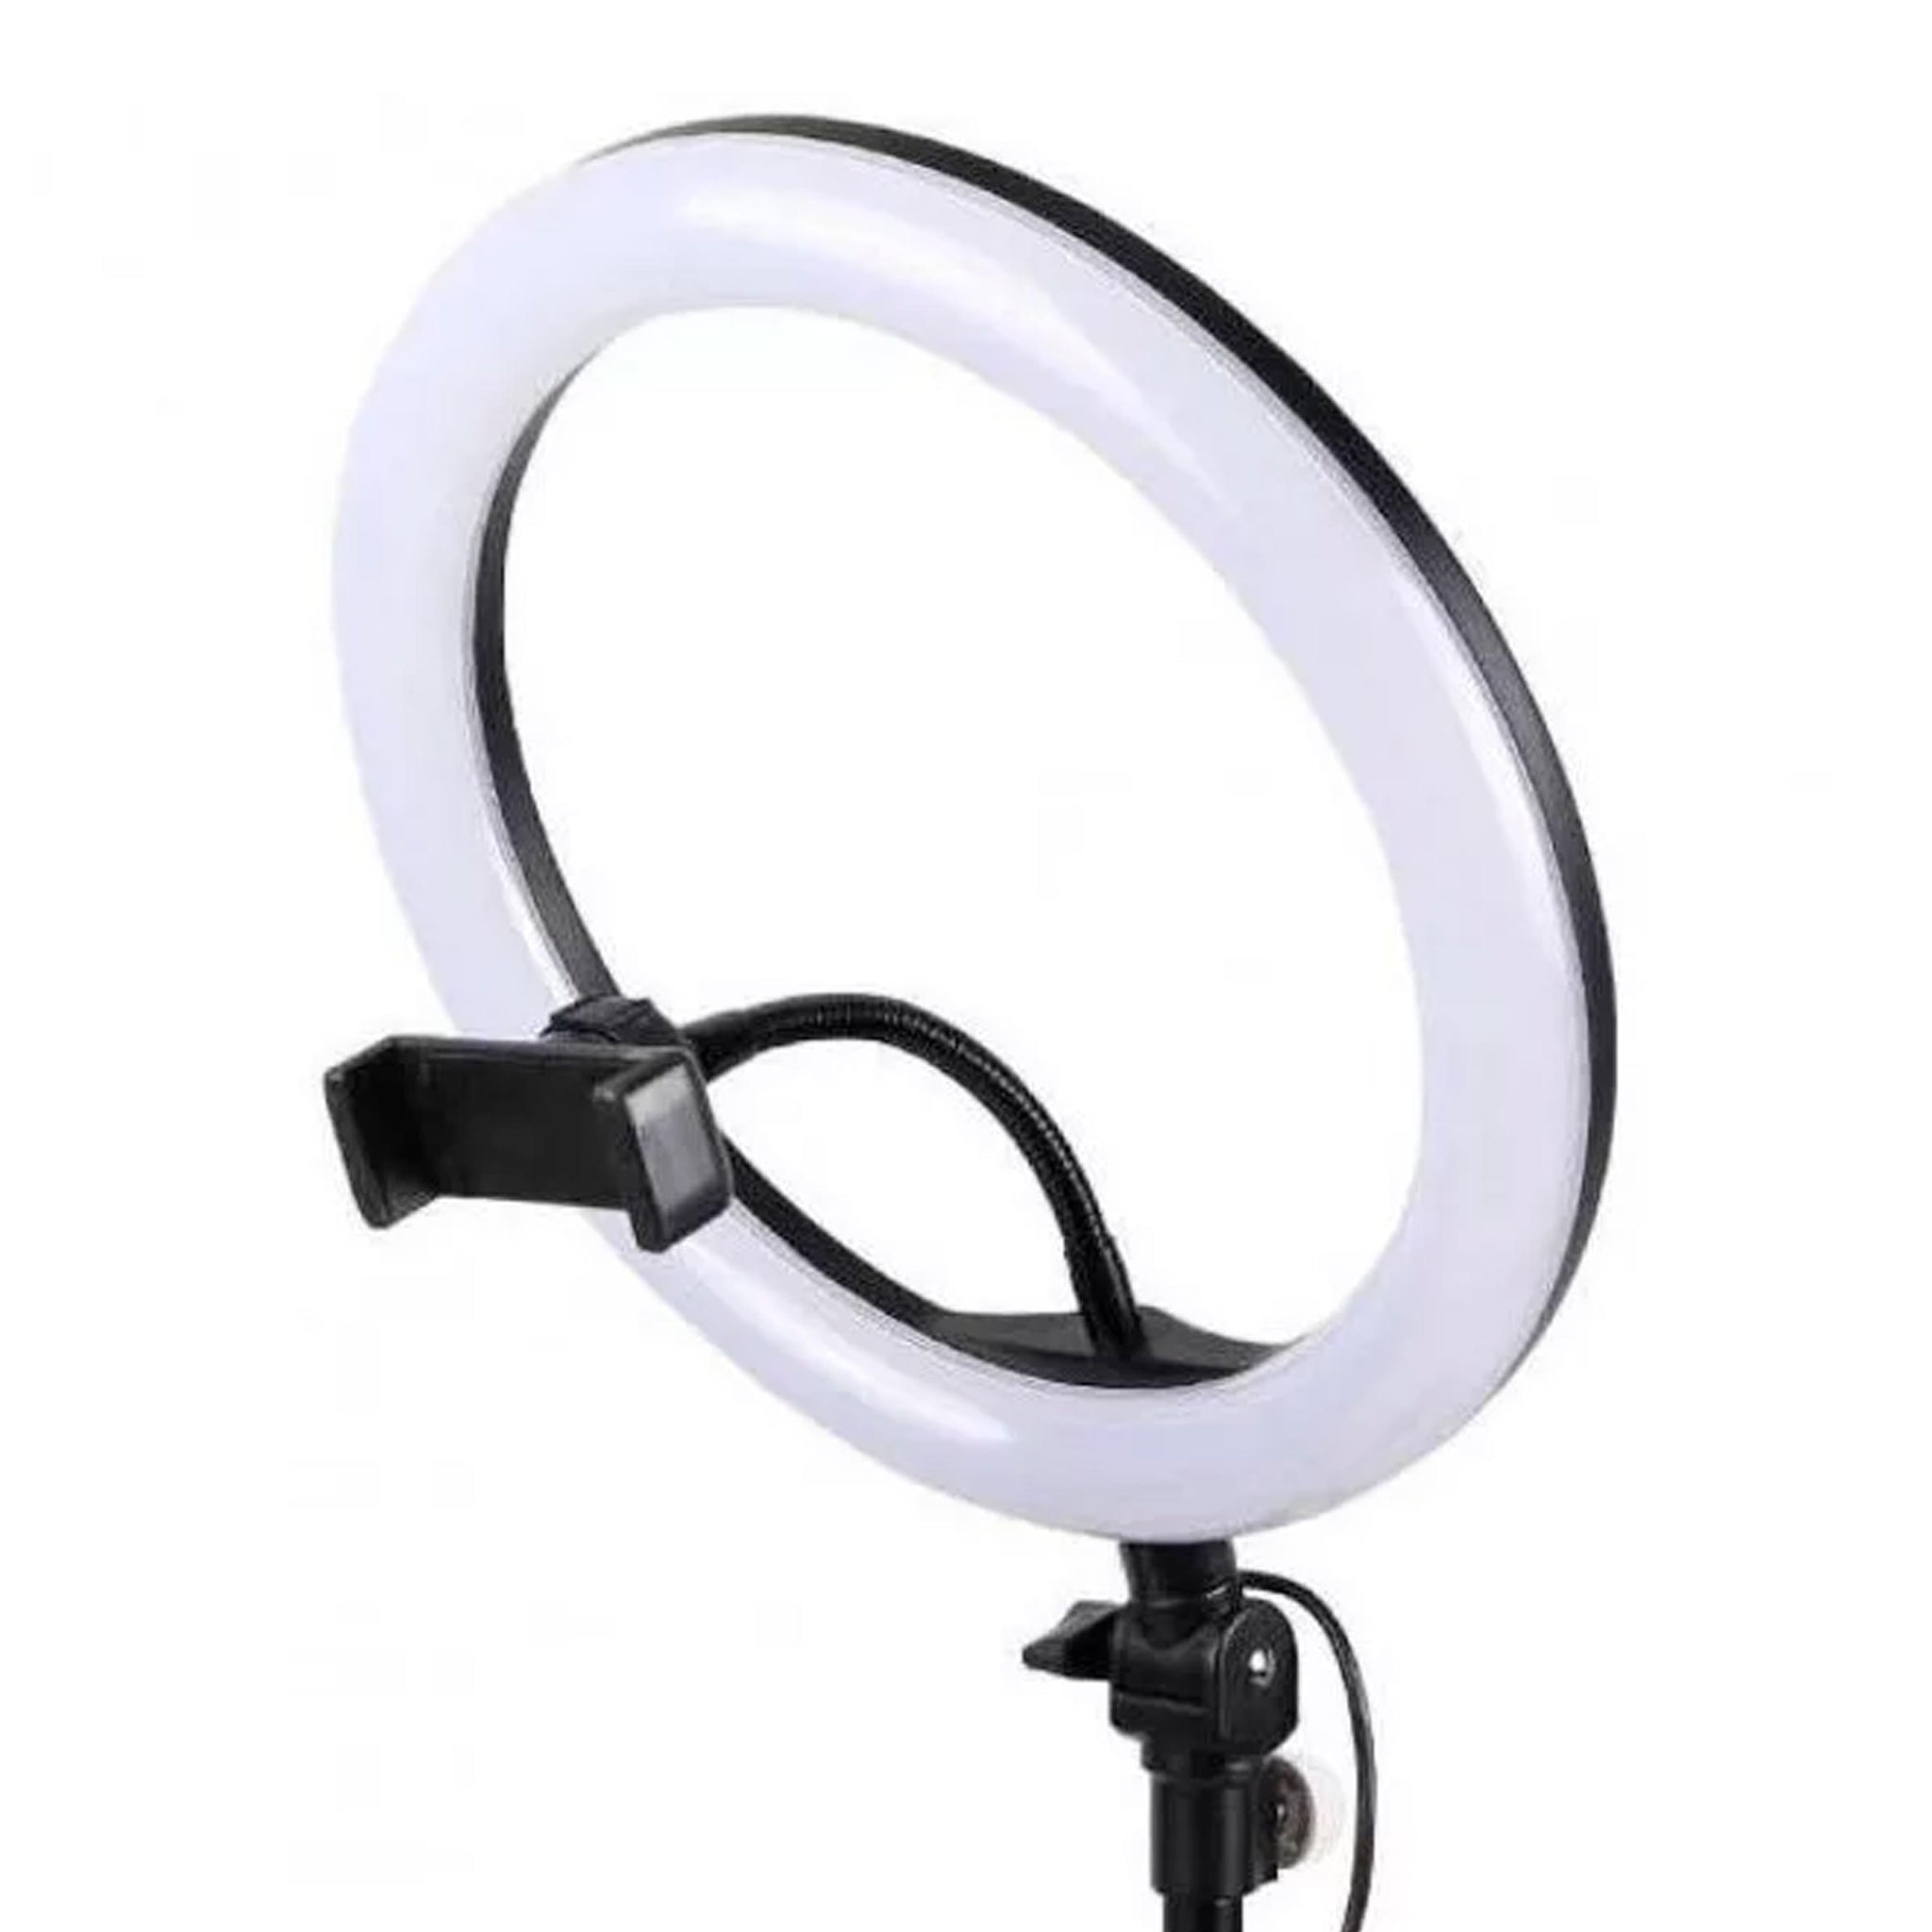 Aro de luz LED de 26 cm con soporte móvil【Comprar online】- TicTacBuy